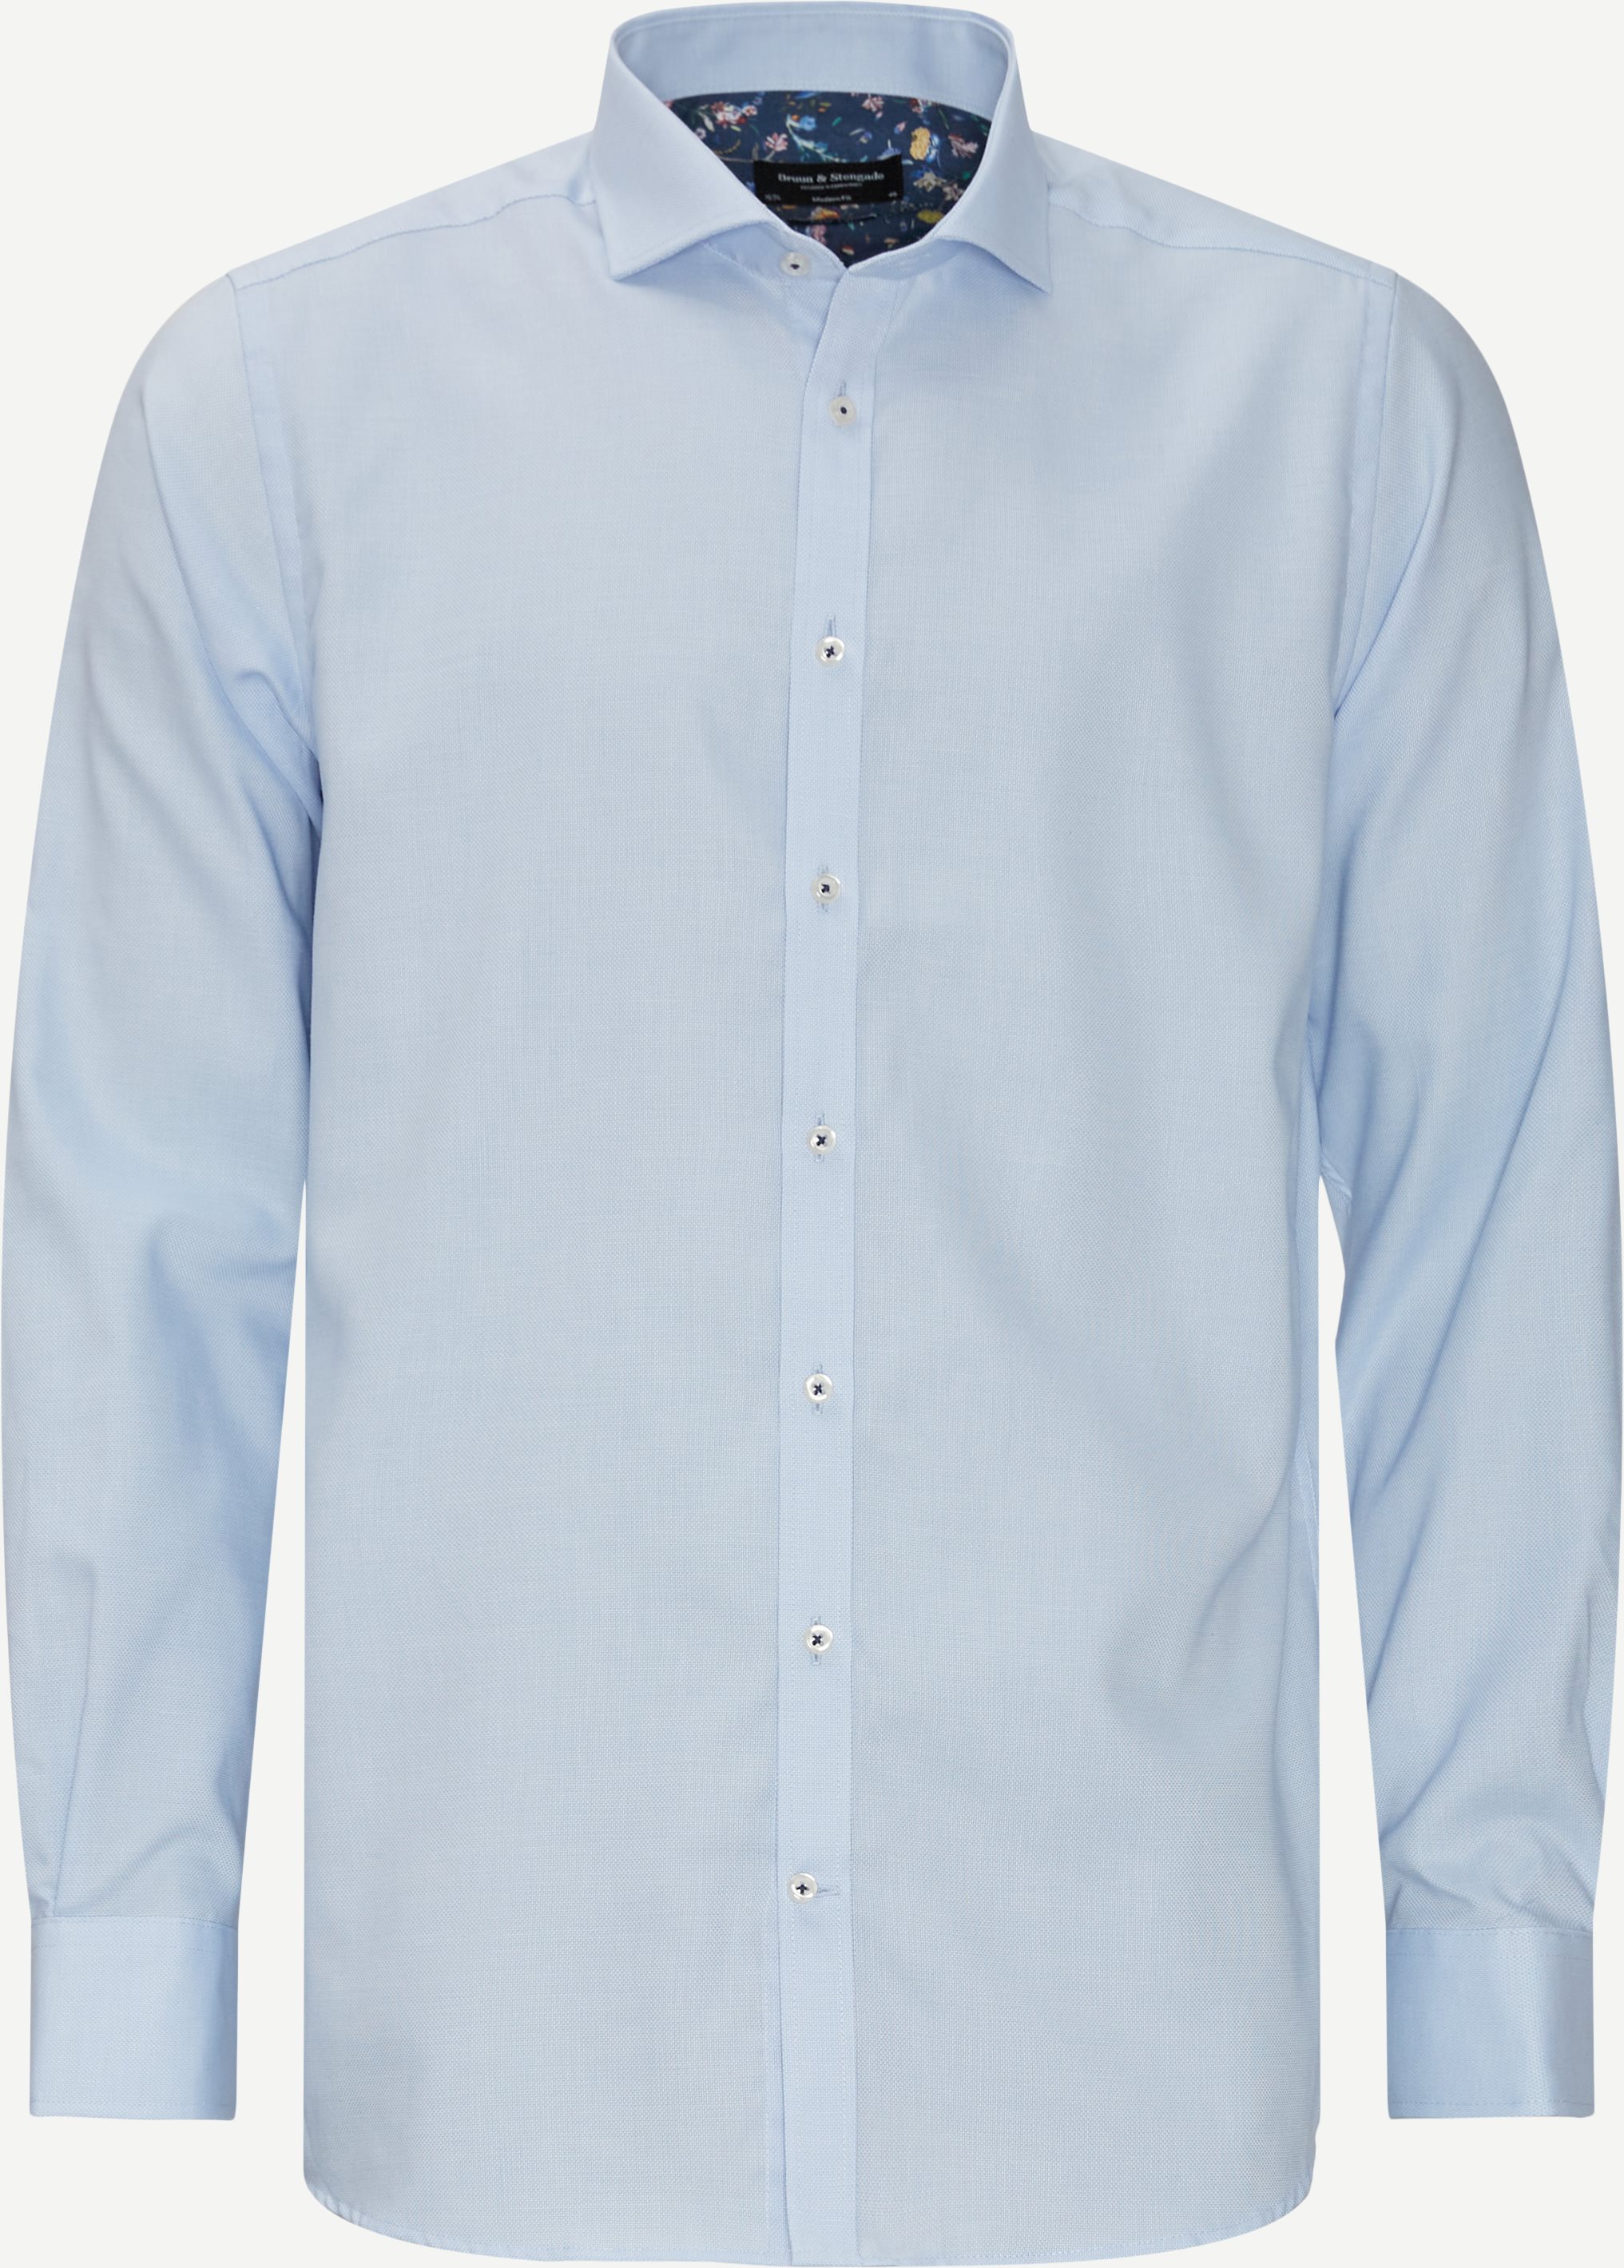 Skjortor - Modern fit - Blå